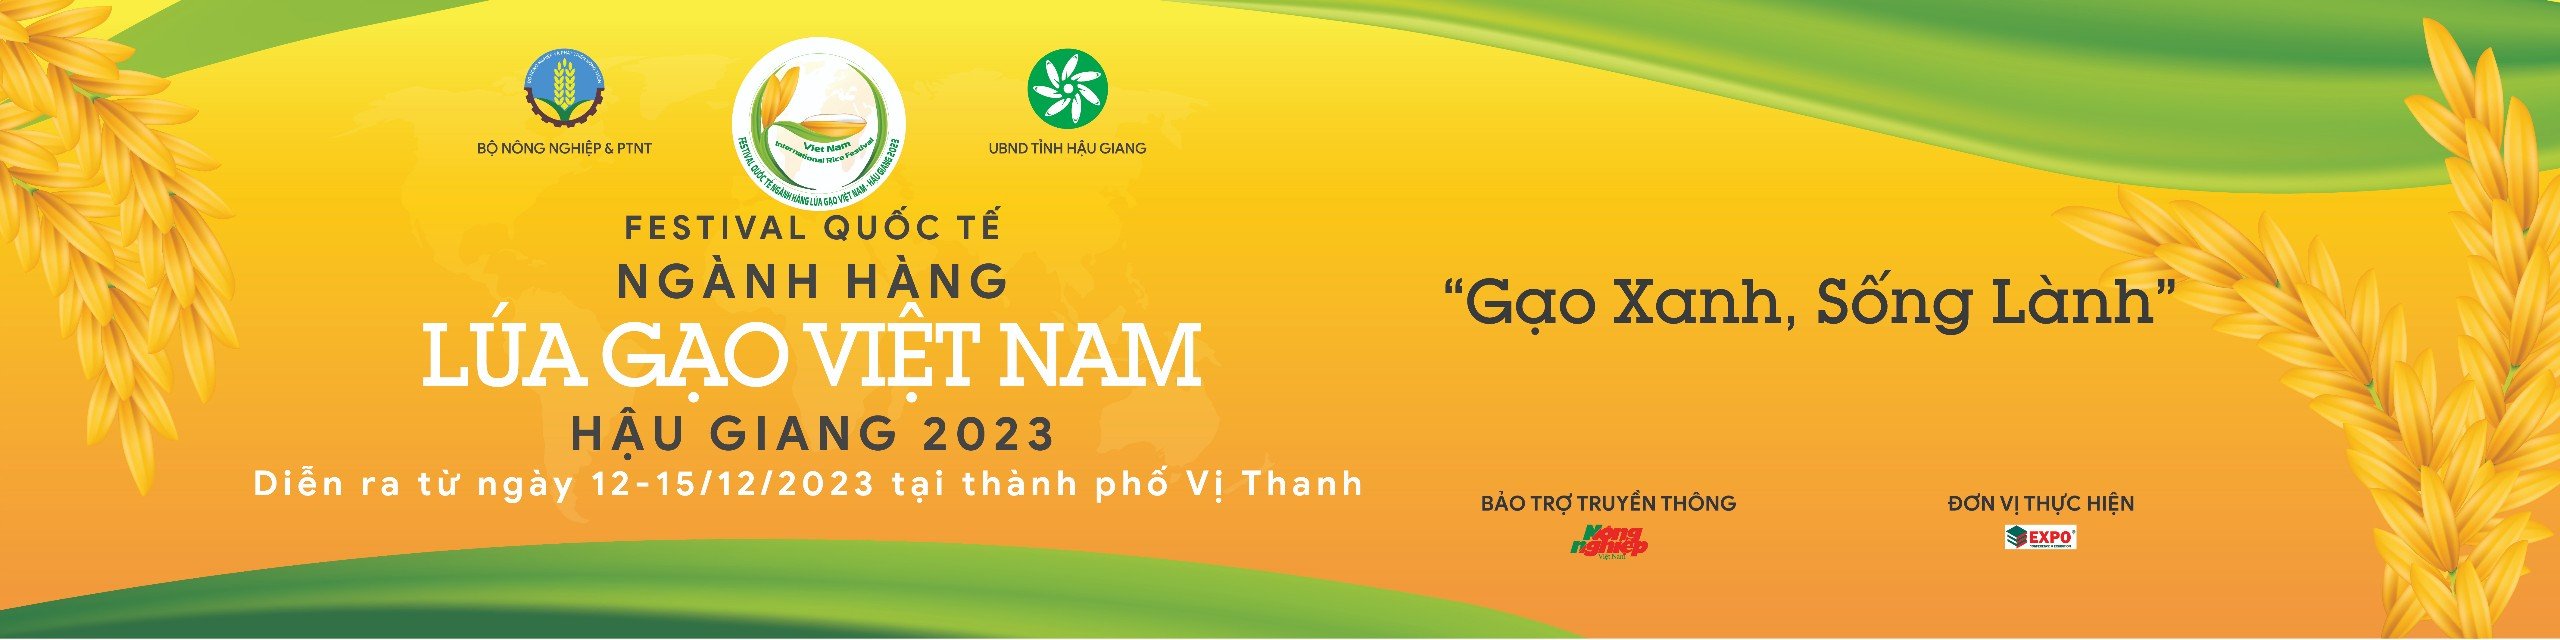 festval lua gao Viet Nam 2023